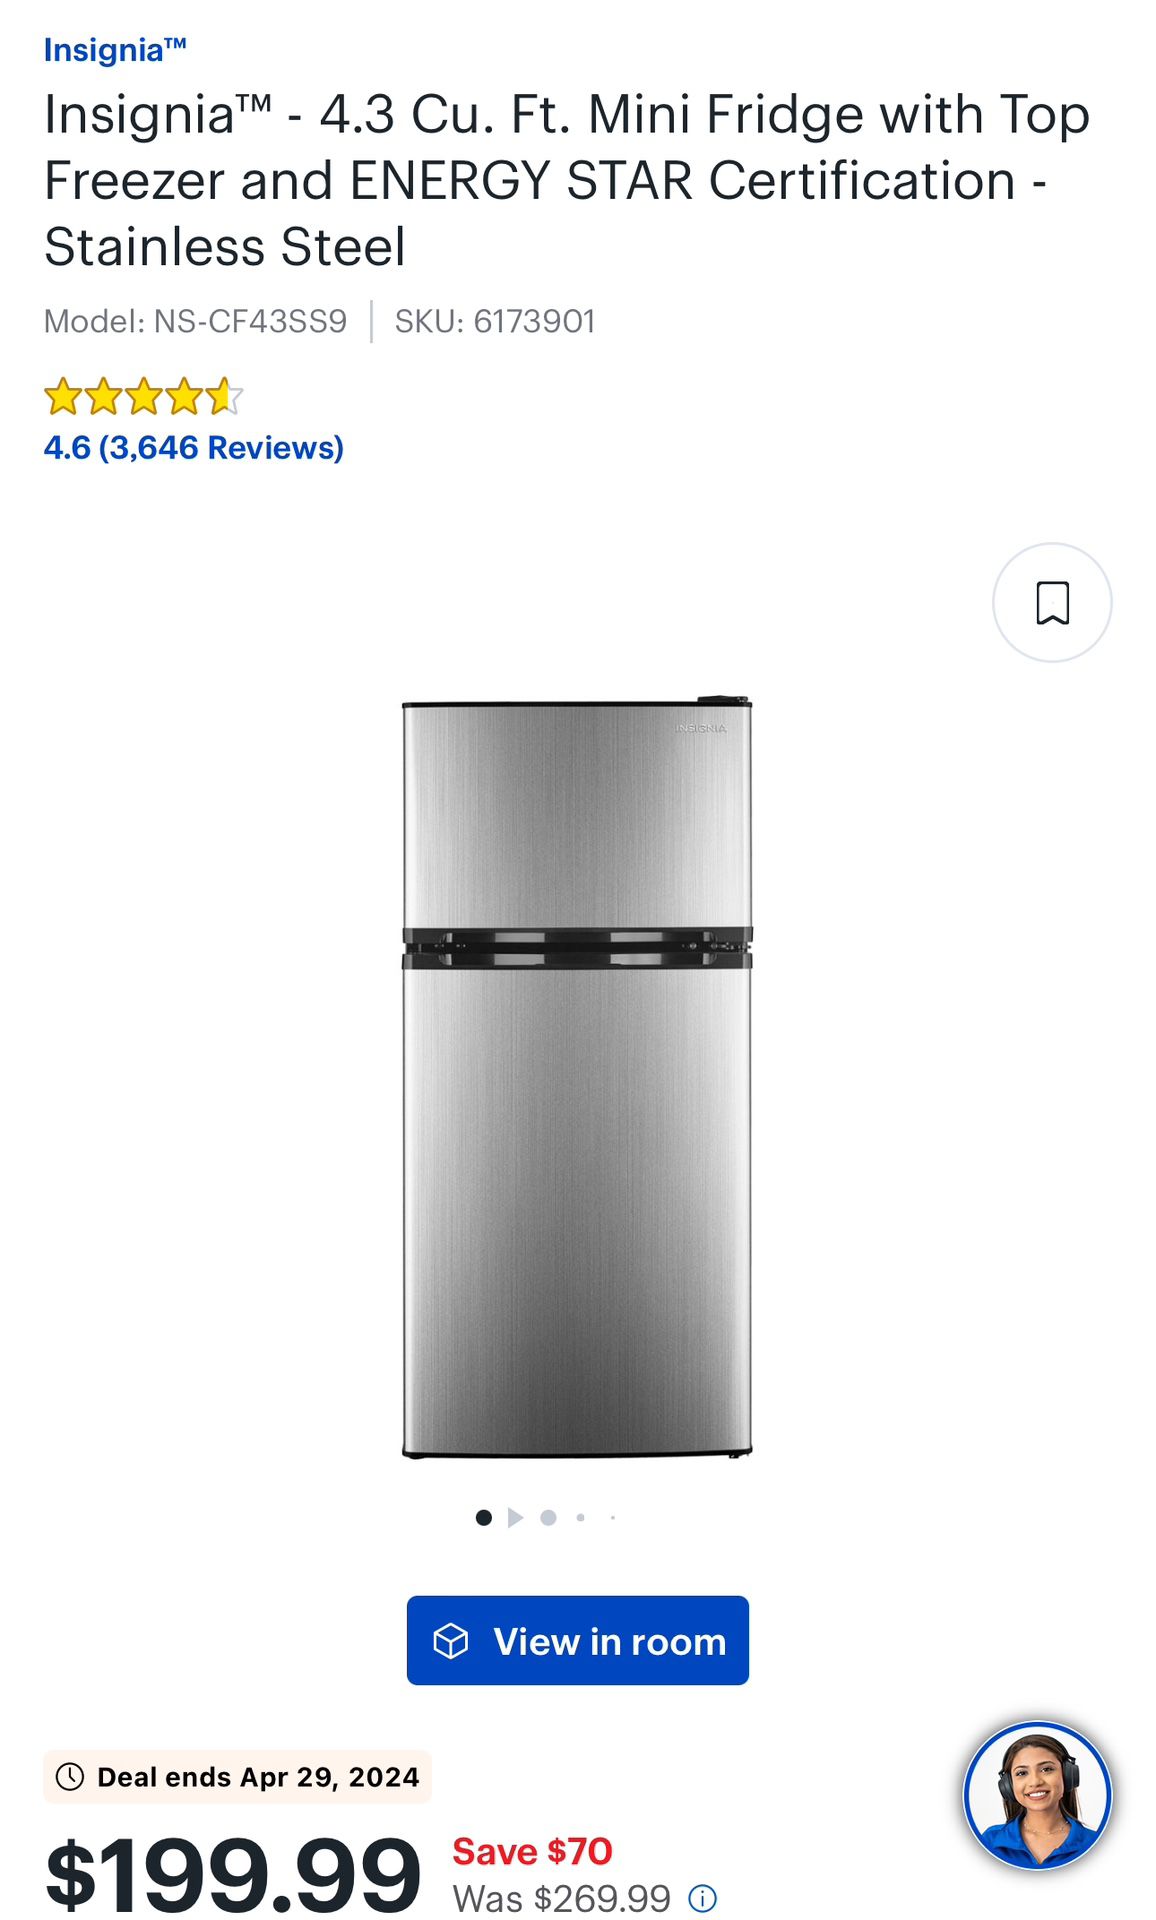 Refrigerador (Mini), Insignia (freezer / fridge